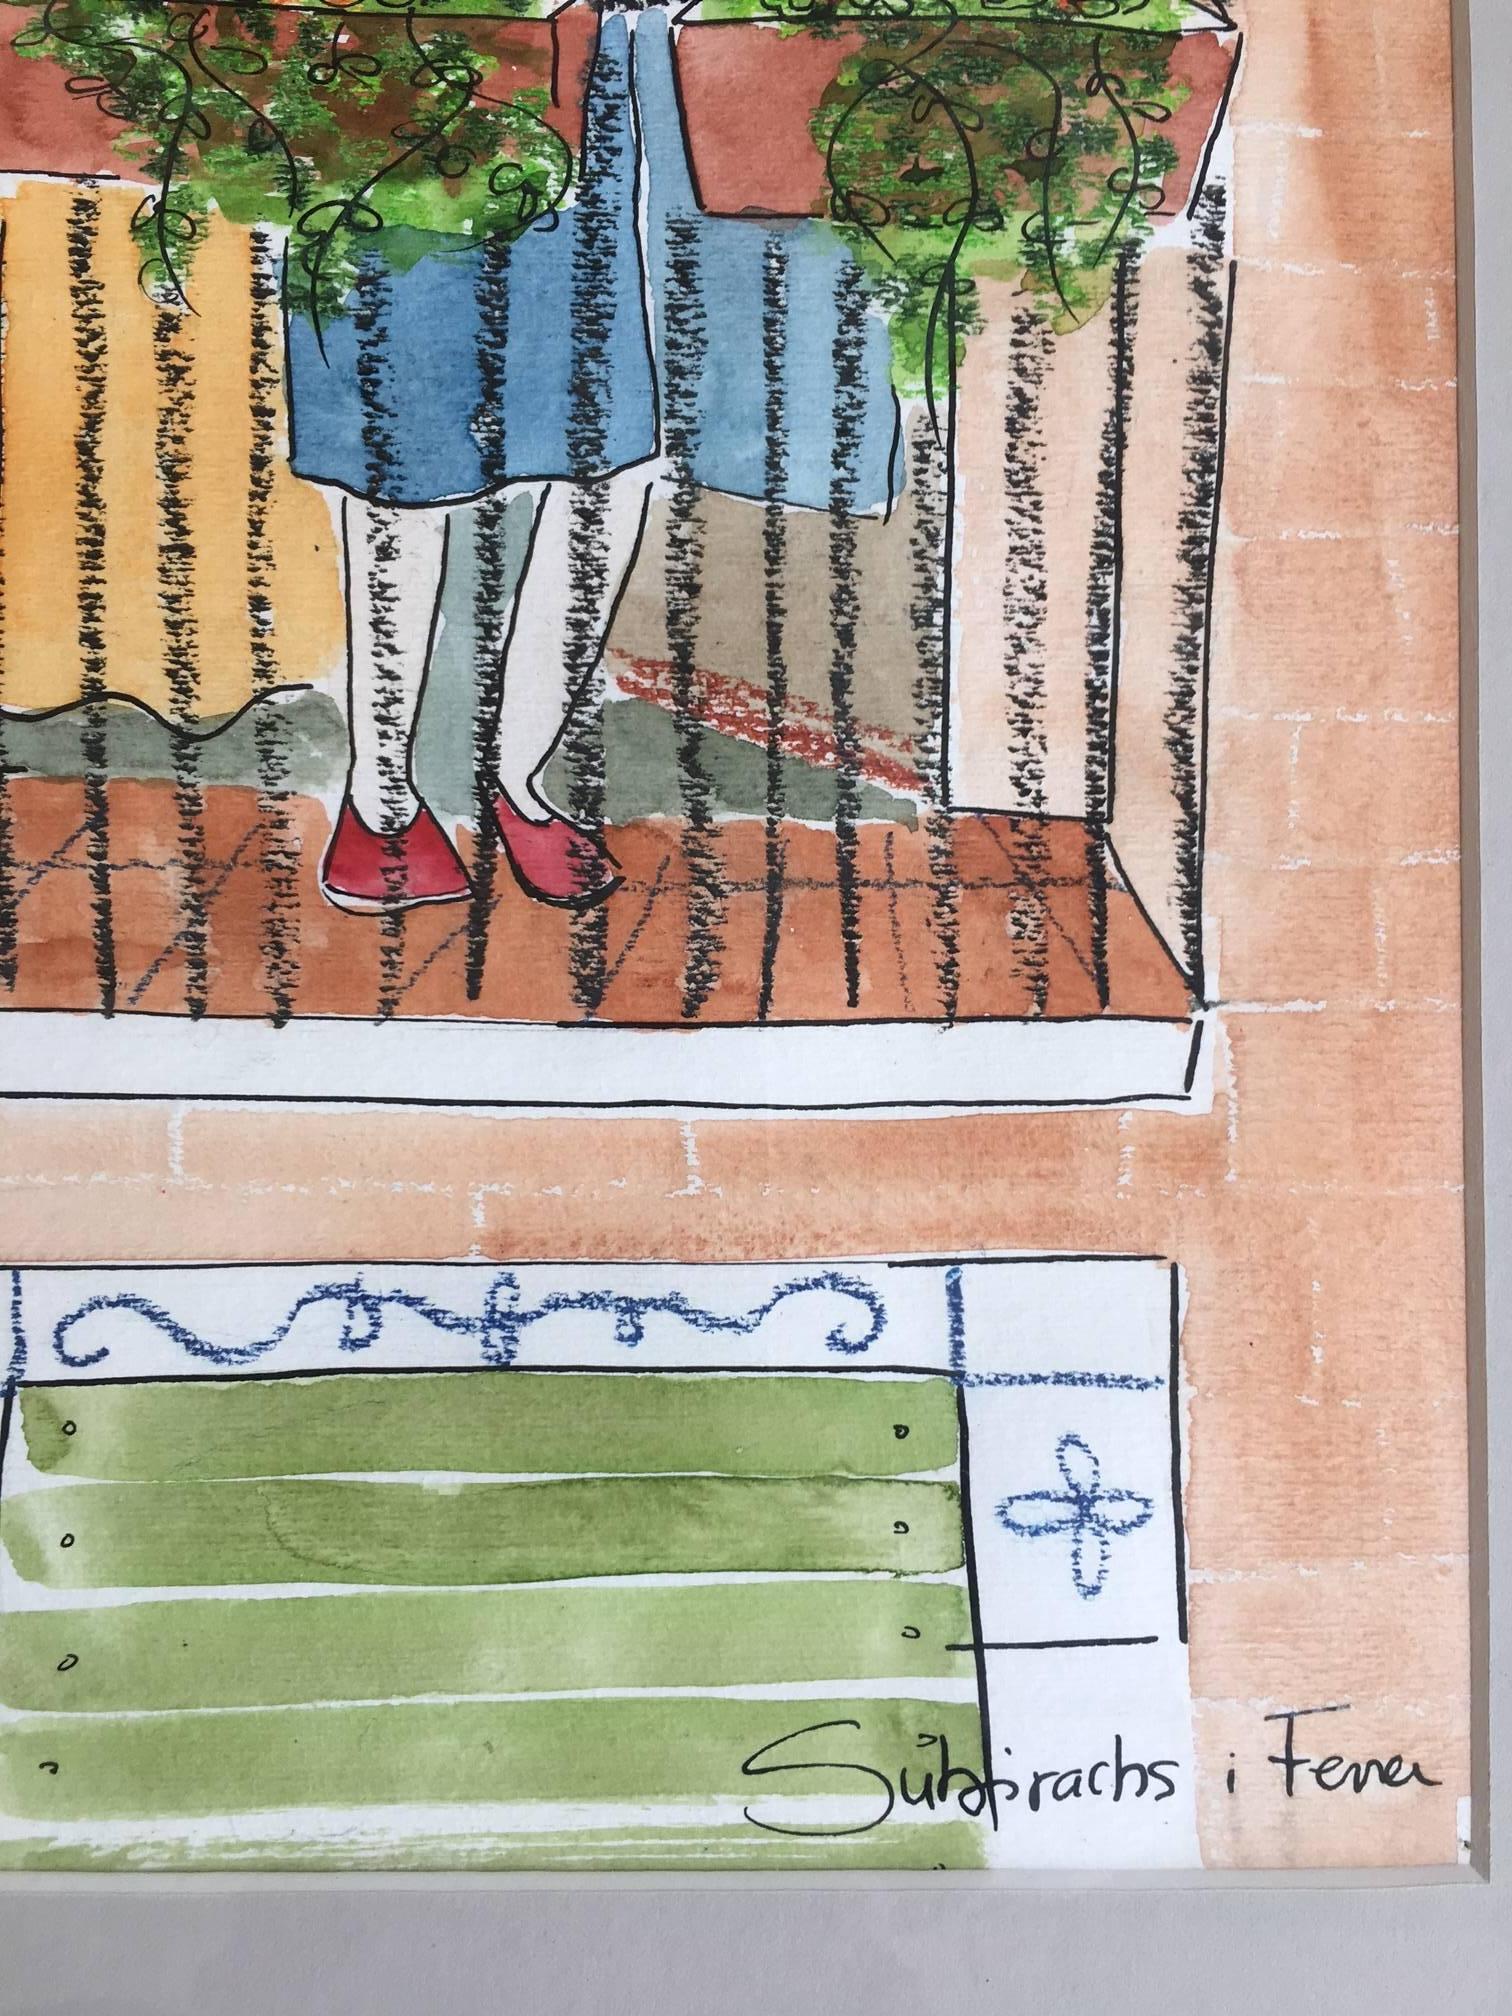 Subirachs. balkon mit blumen. naif kind work.original aquarell 
Subirachs  Ferrer ist nicht nur eine begnadete Malerin und Zeichnerin, sondern auch eine Illustratorin, die in jedem ihrer Werke eine Berufung zum Ausdruck bringt, die sich auf